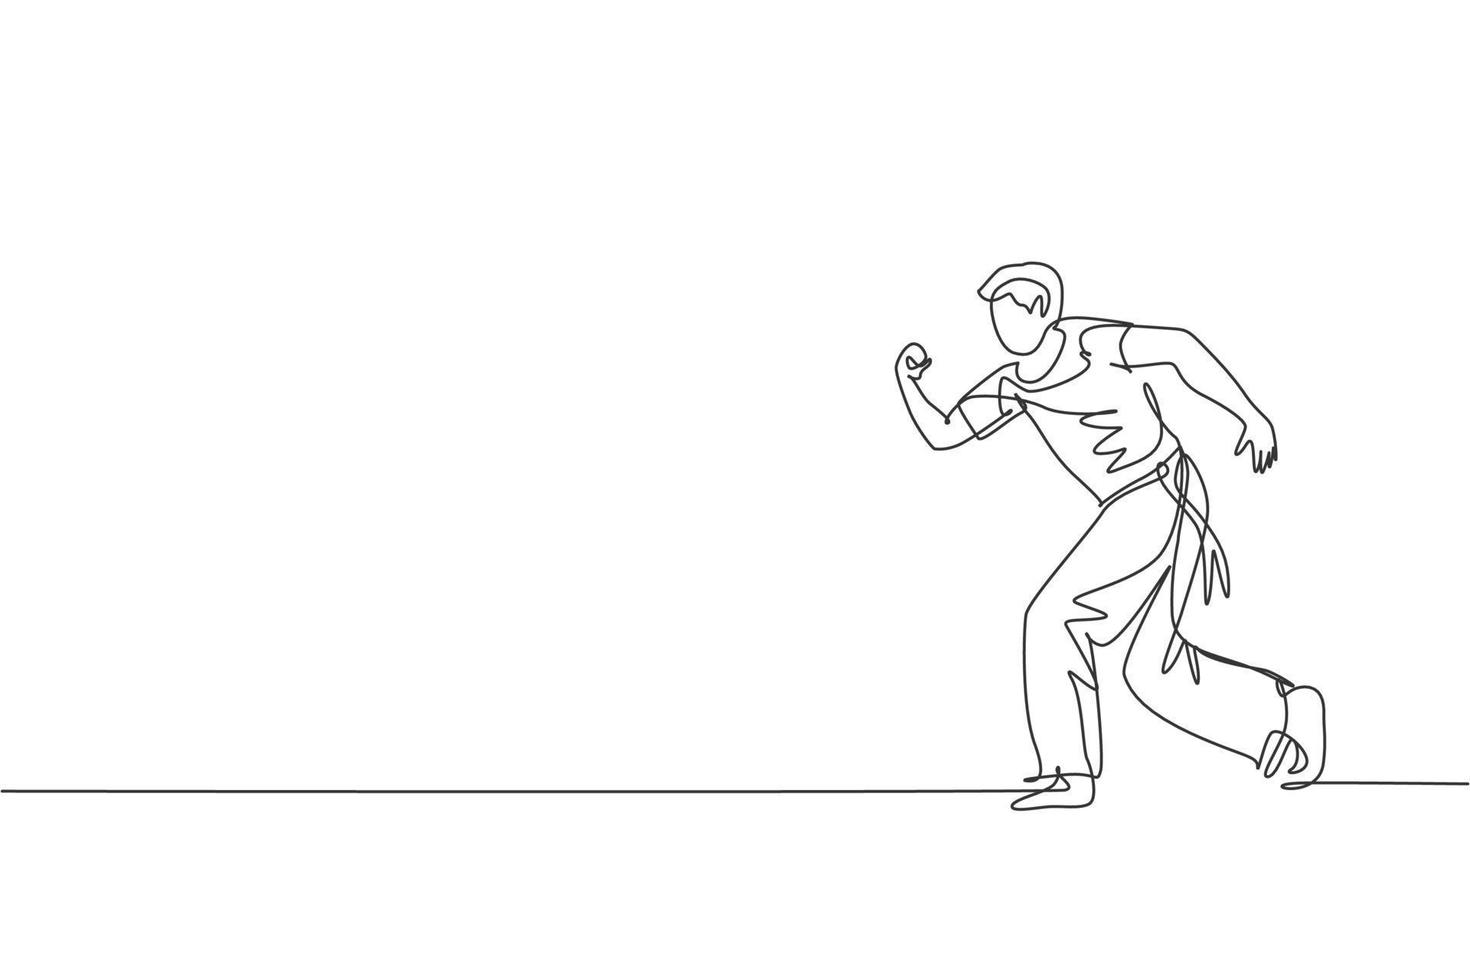 een doorlopende lijntekening jonge sportieve braziliaanse vechter man capoeira trainen op het strand. gezond traditioneel vechtsportconcept. dynamische enkele lijn tekenen grafisch ontwerp vectorillustratie vector